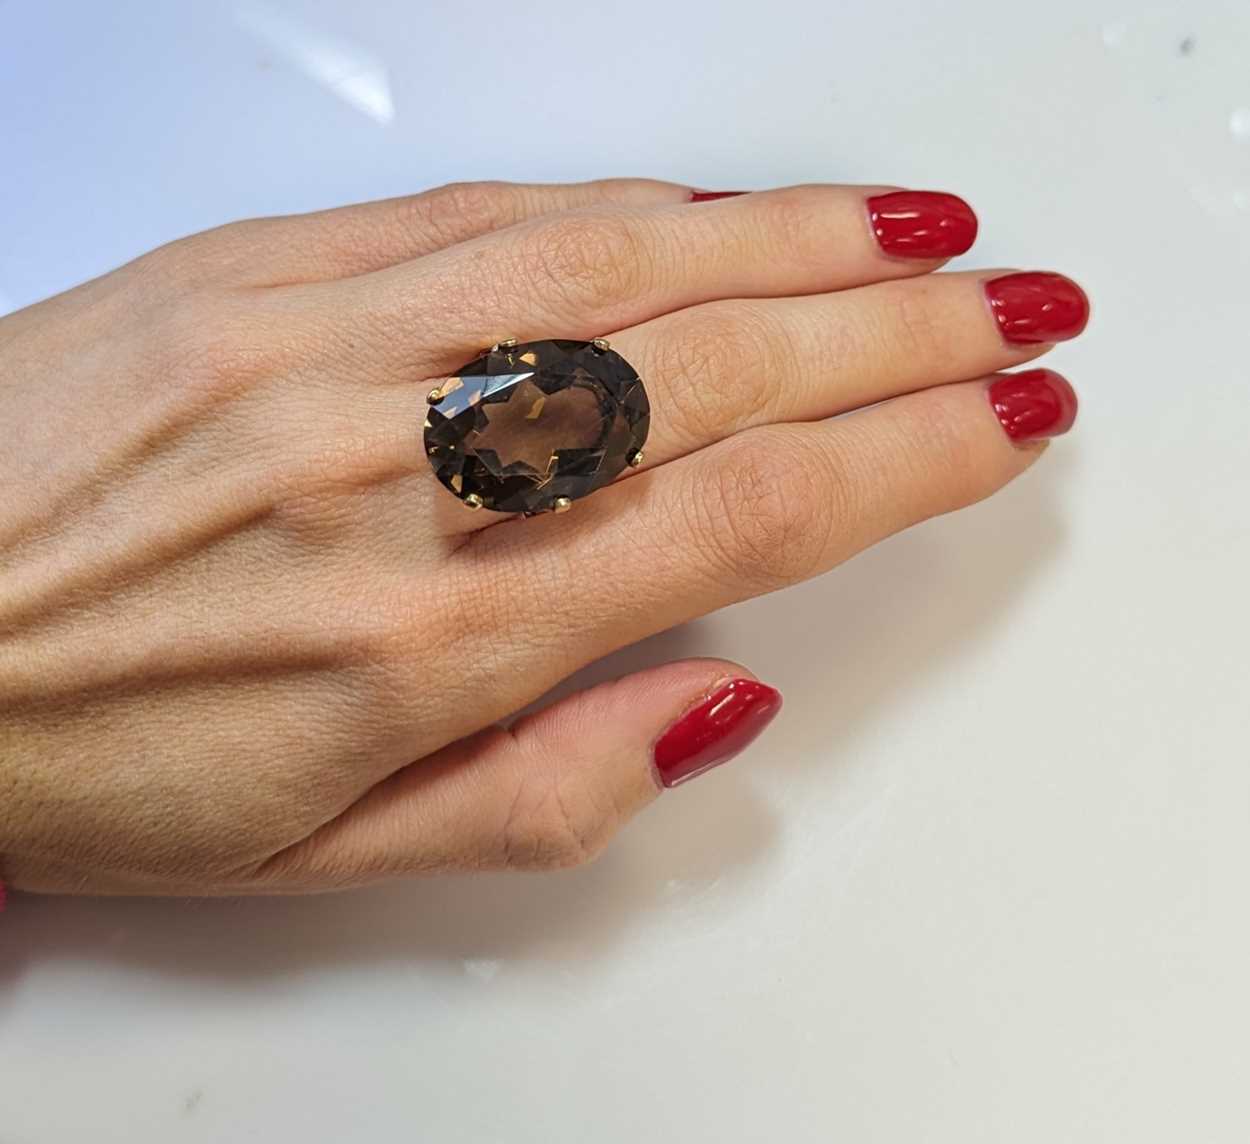 A smoky quartz dress ring, - Image 4 of 4